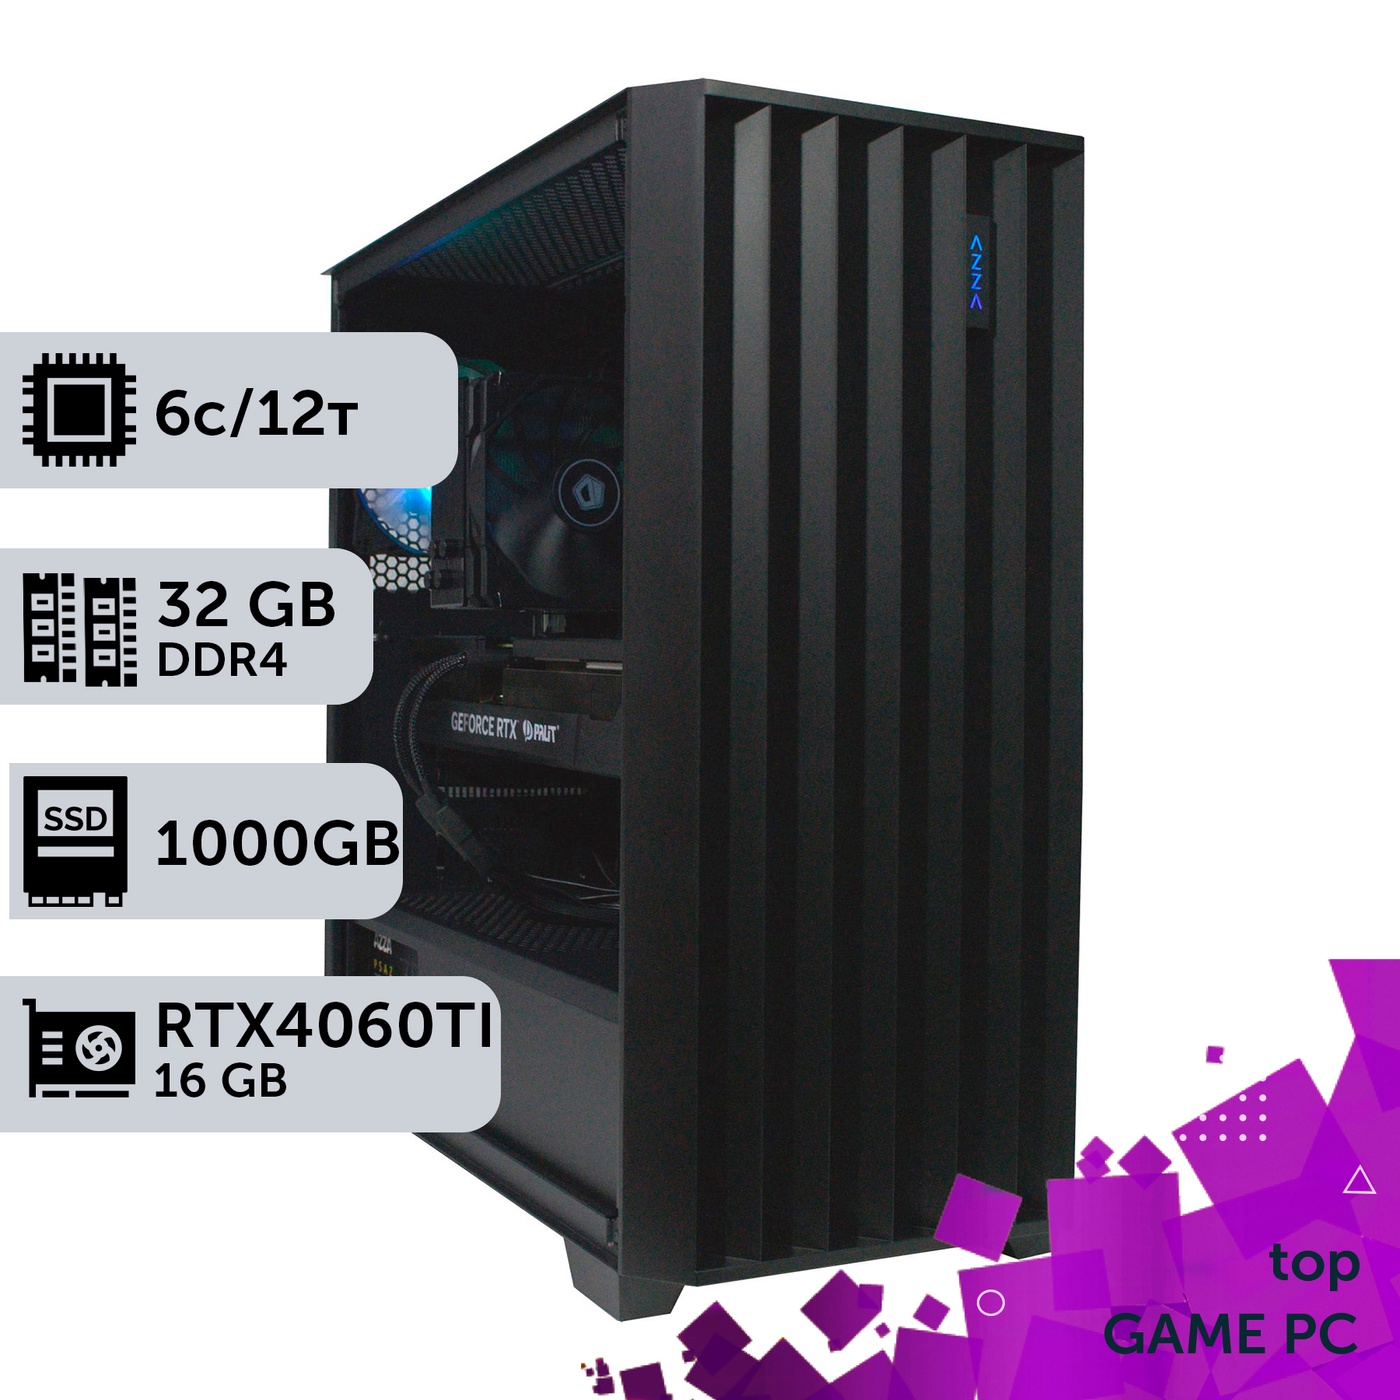 Ігровий комп'ютер GamePC TOP #271 Ryzen 5 5600/32 GB/SSD 1TB/GeForce RTX 4060Ti 16GB